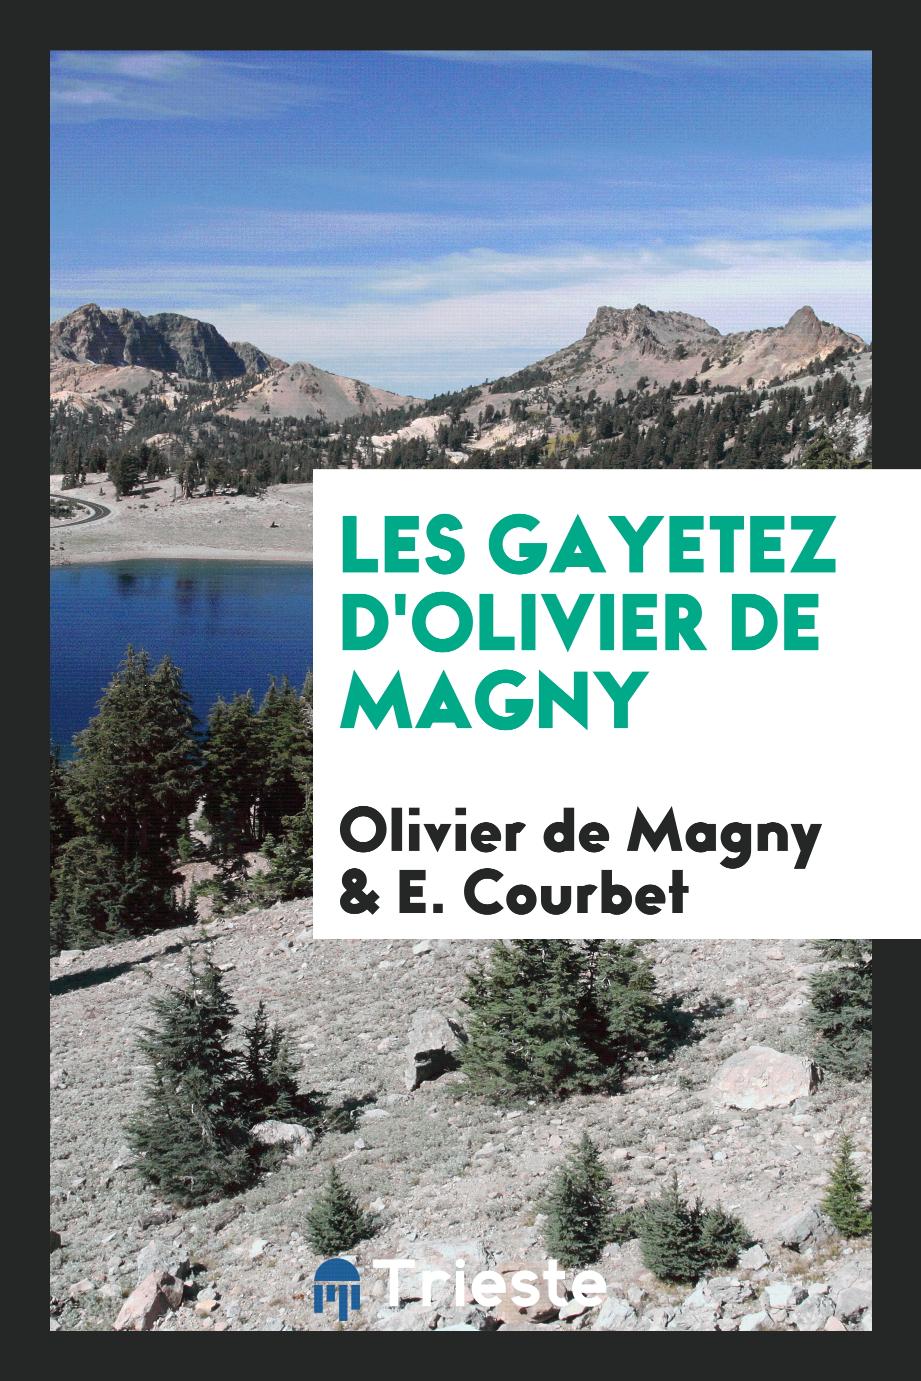 Les gayetez d'Olivier de Magny